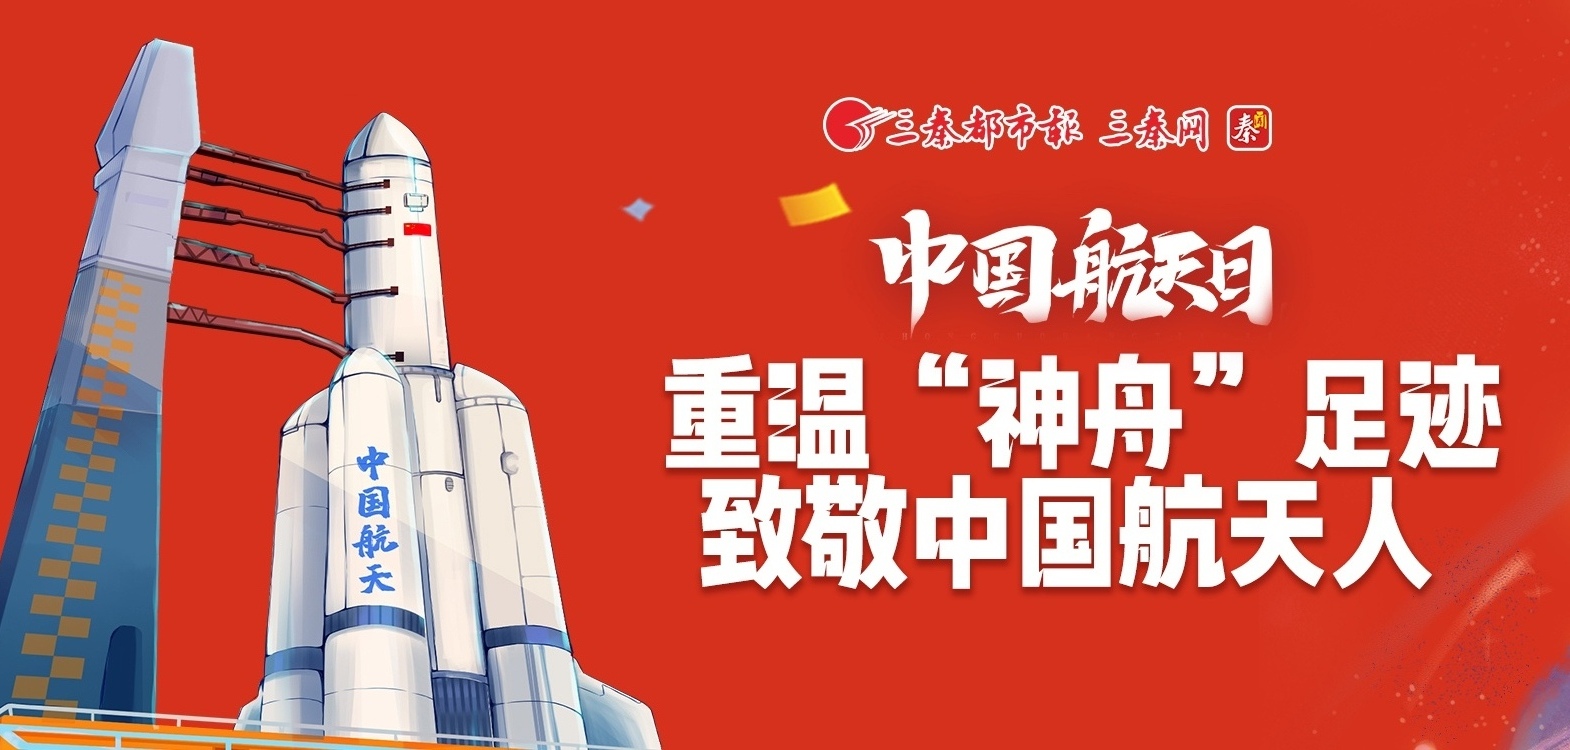 中国航天日|重温“神舟”足迹 致敬中国航天人